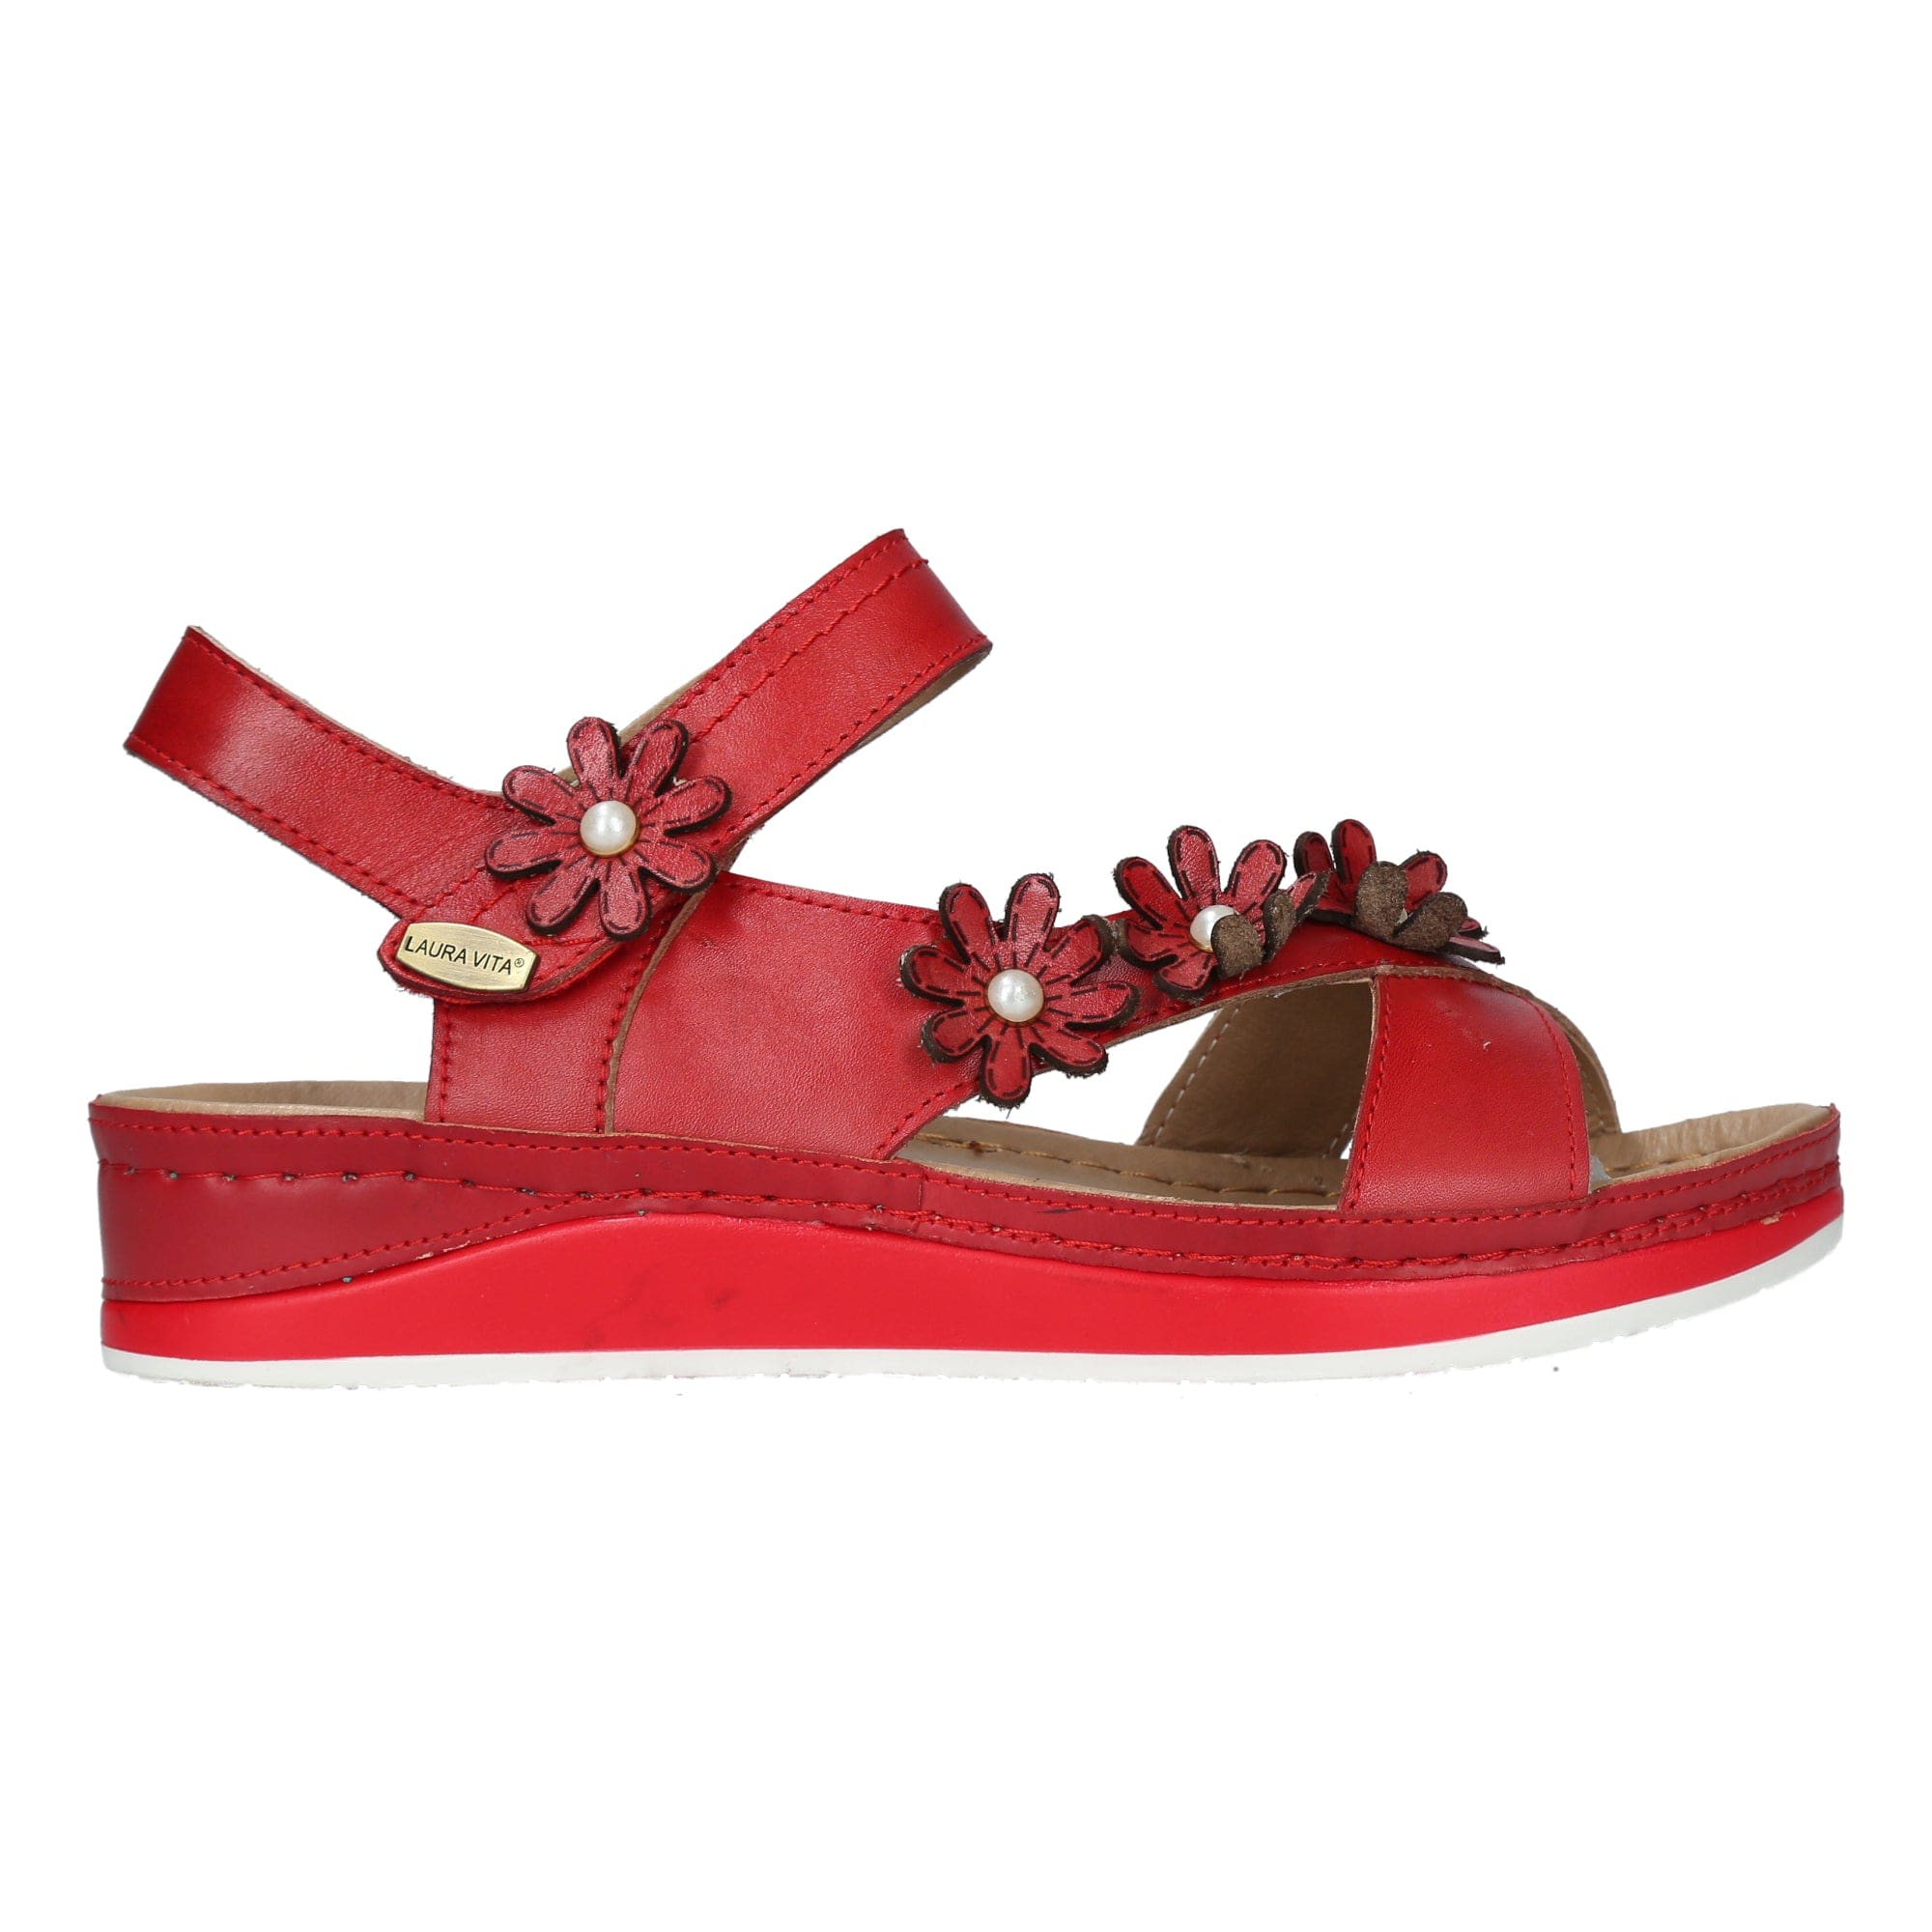 Shoe BRCUELO 91 - 35 / Red - Sandal